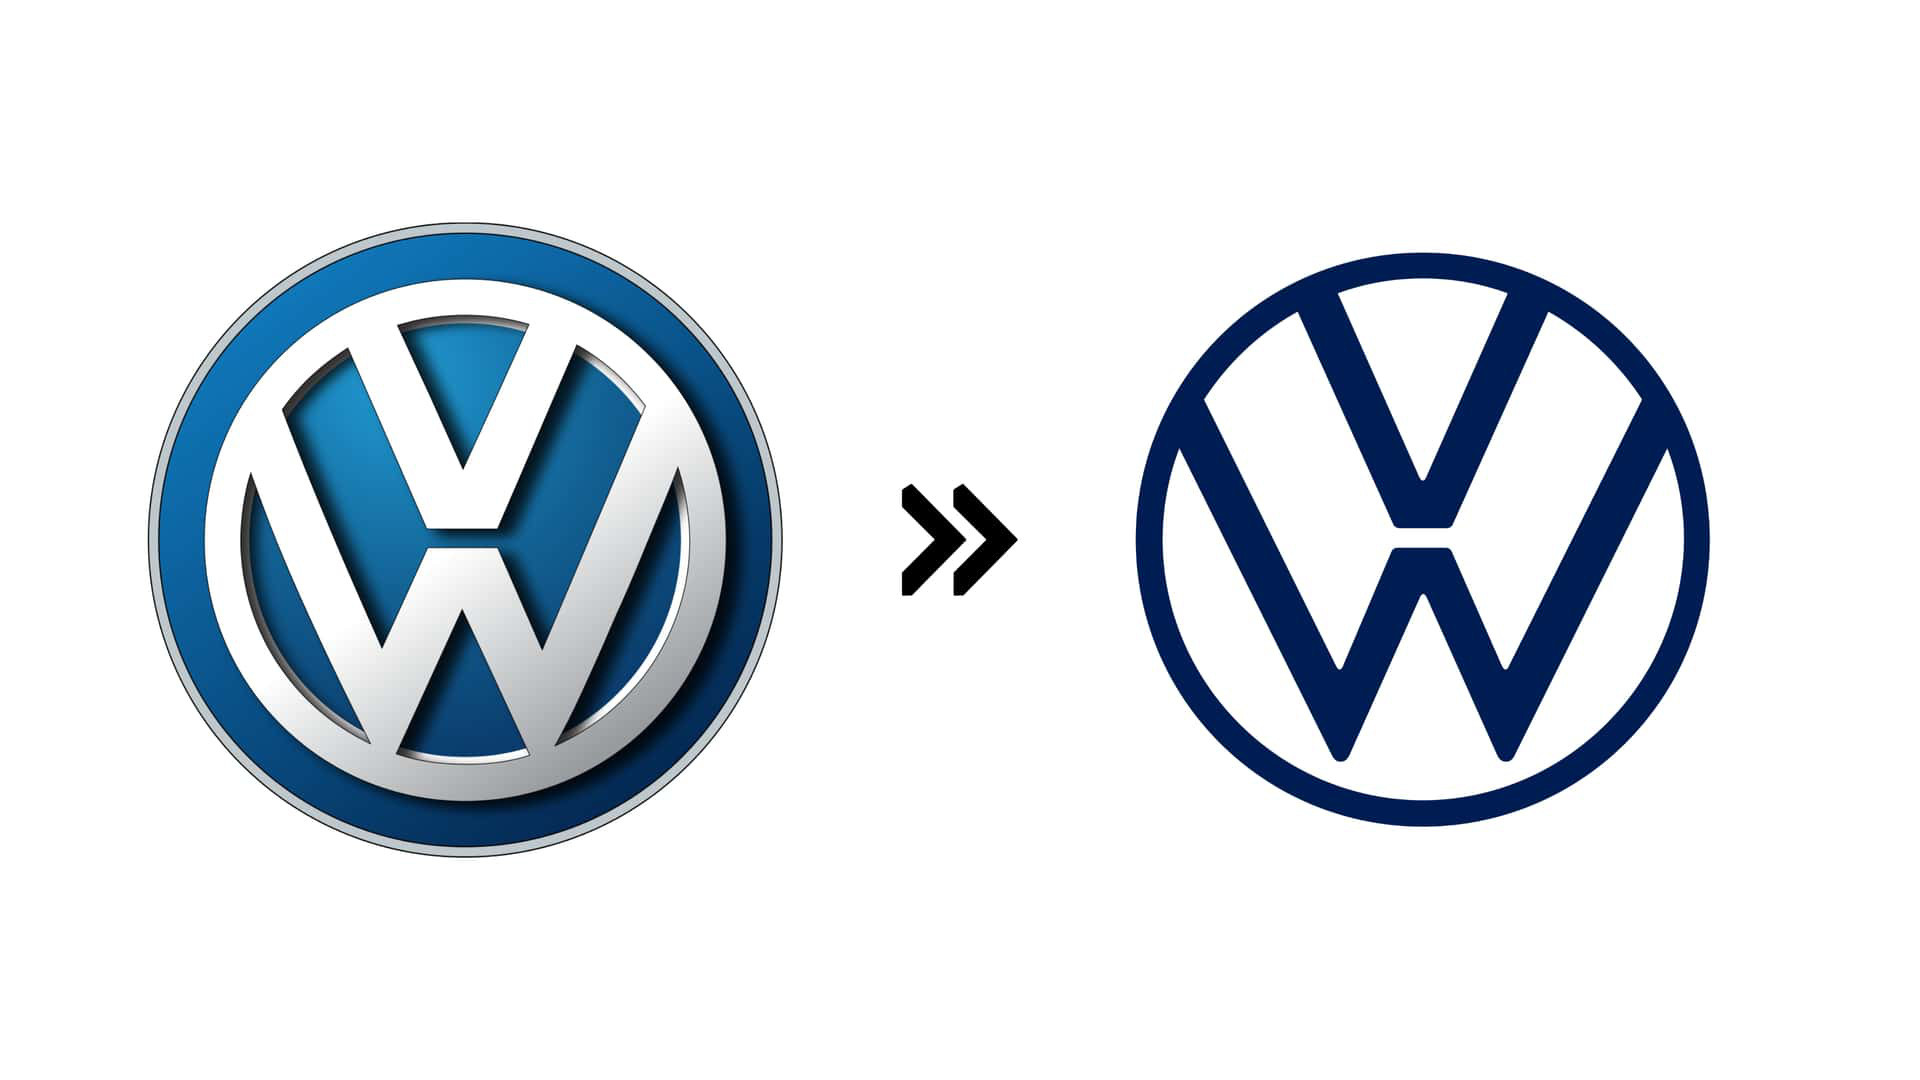 Volkswagen (2019): Volkswagen, khi đẩy mạnh mảng điện hóa vào năm 2019, đã đổi luôn logo để khép lại 